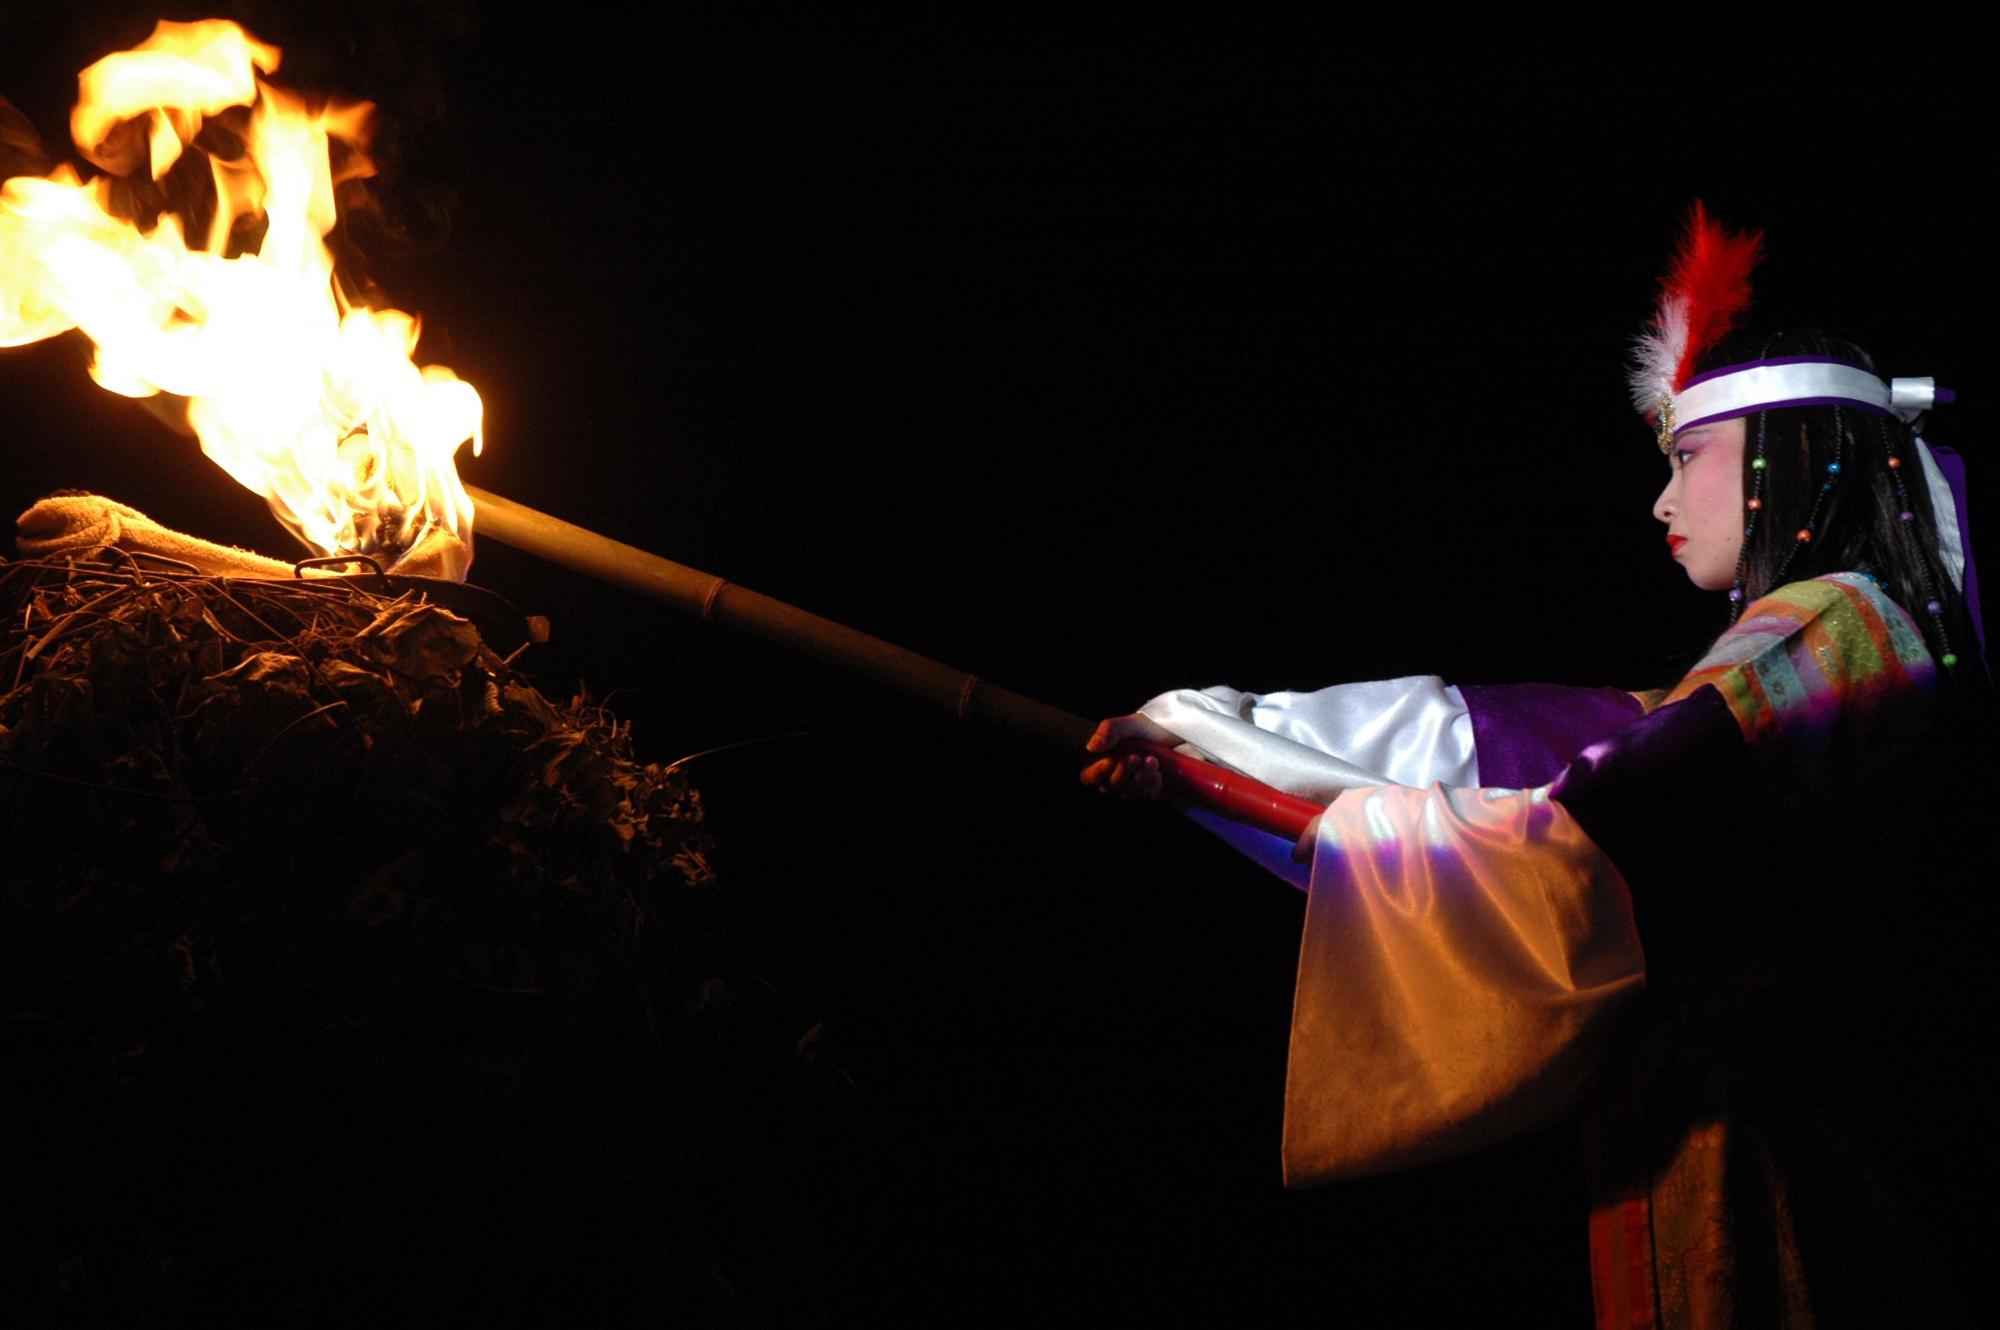 卑弥呼の衣装を身に着けた女性が炎の付いたたいまつを持って火を付けようとしている写真